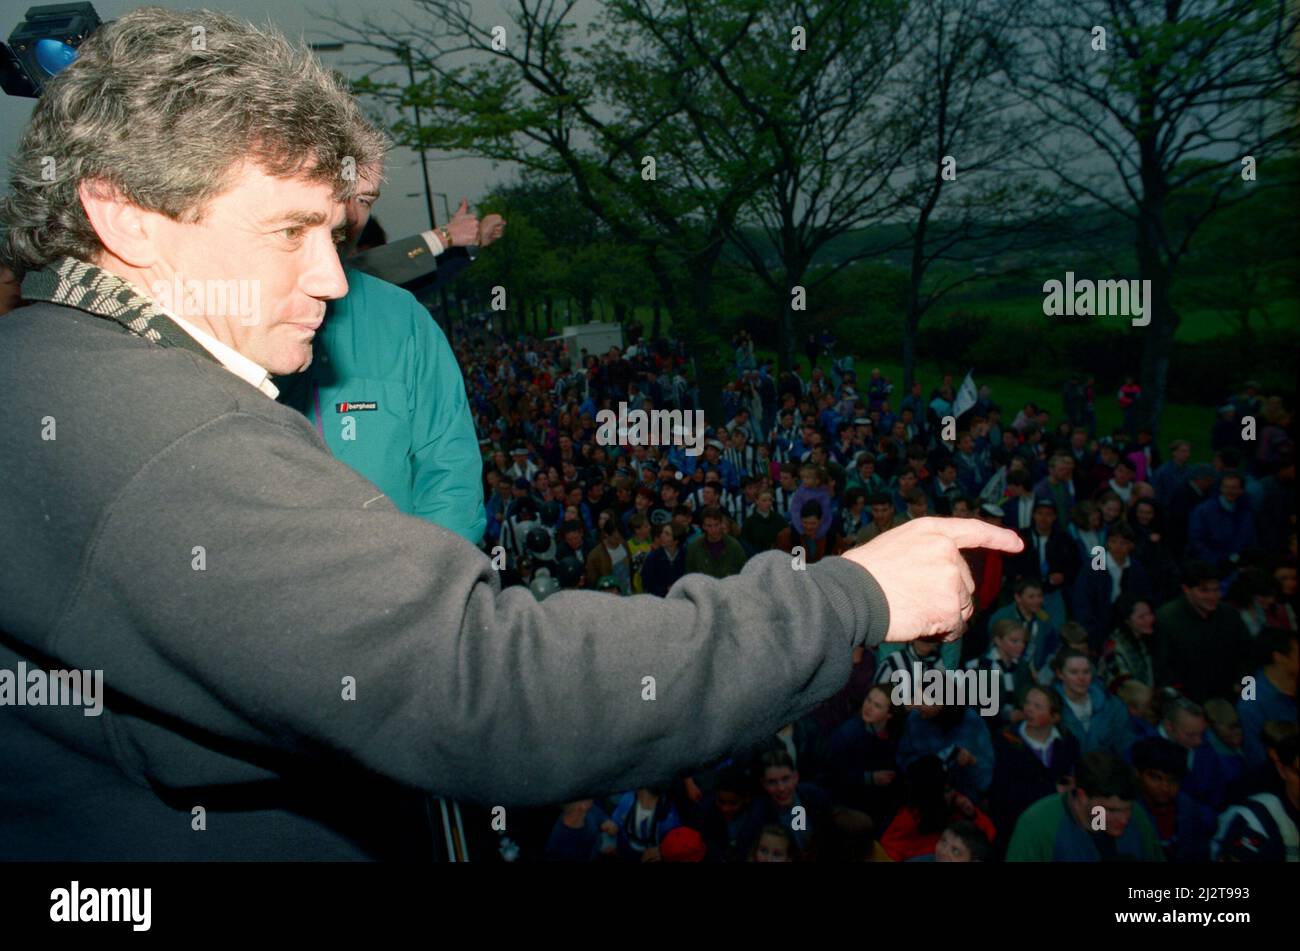 Newcastle United feiert, als sie die League Division 1 gewinnen. Manager Kevin Keegan und Spieler im offenen Bus mit der Trophäe, Fans entlang der Route gesäumt. Mai 1993. Stockfoto